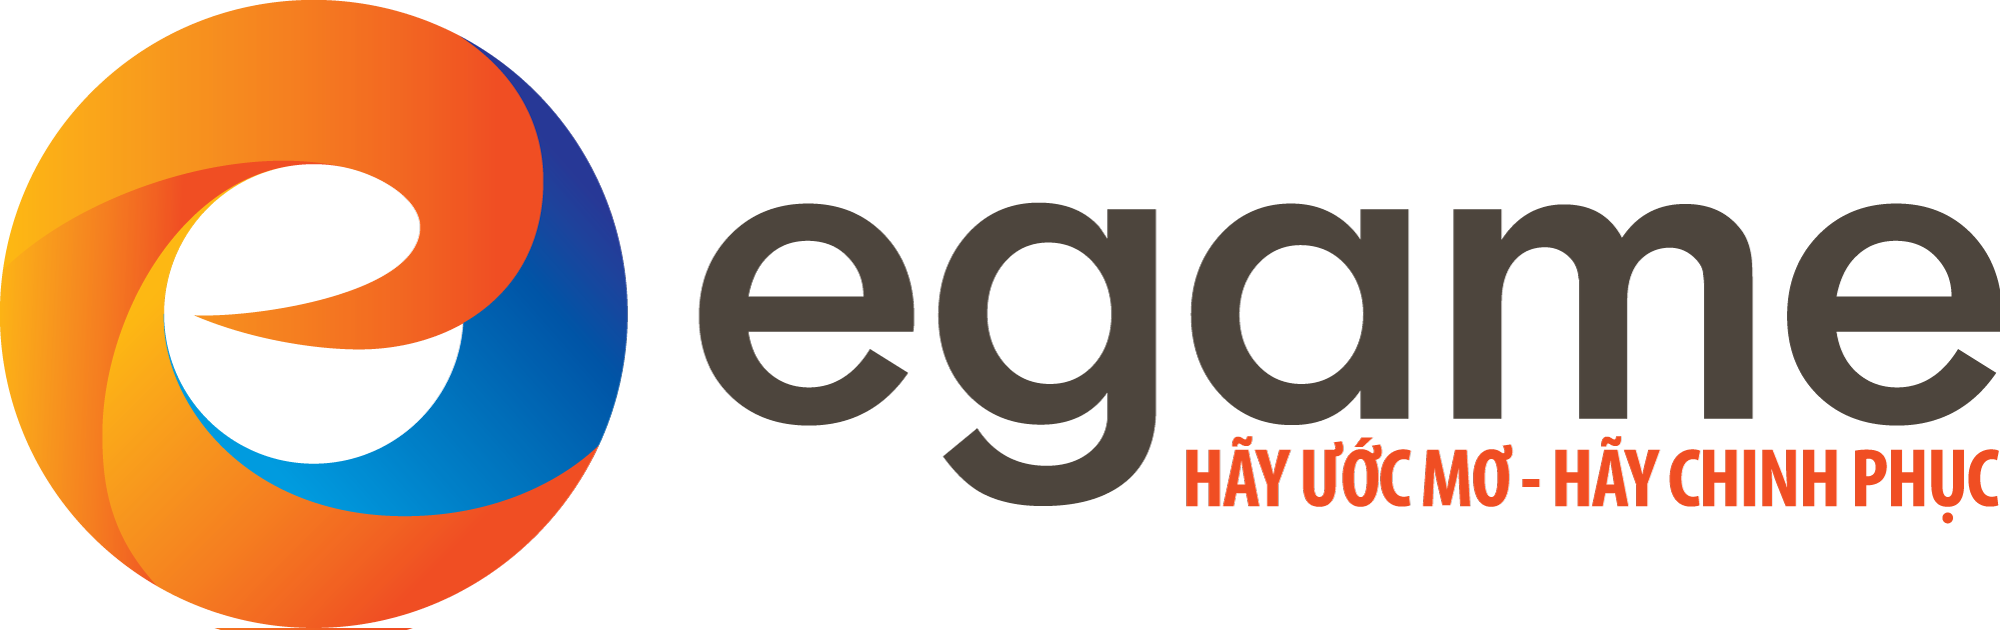 Logo Công ty Cổ phần trò chơi giáo dục trực tuyến - Egame